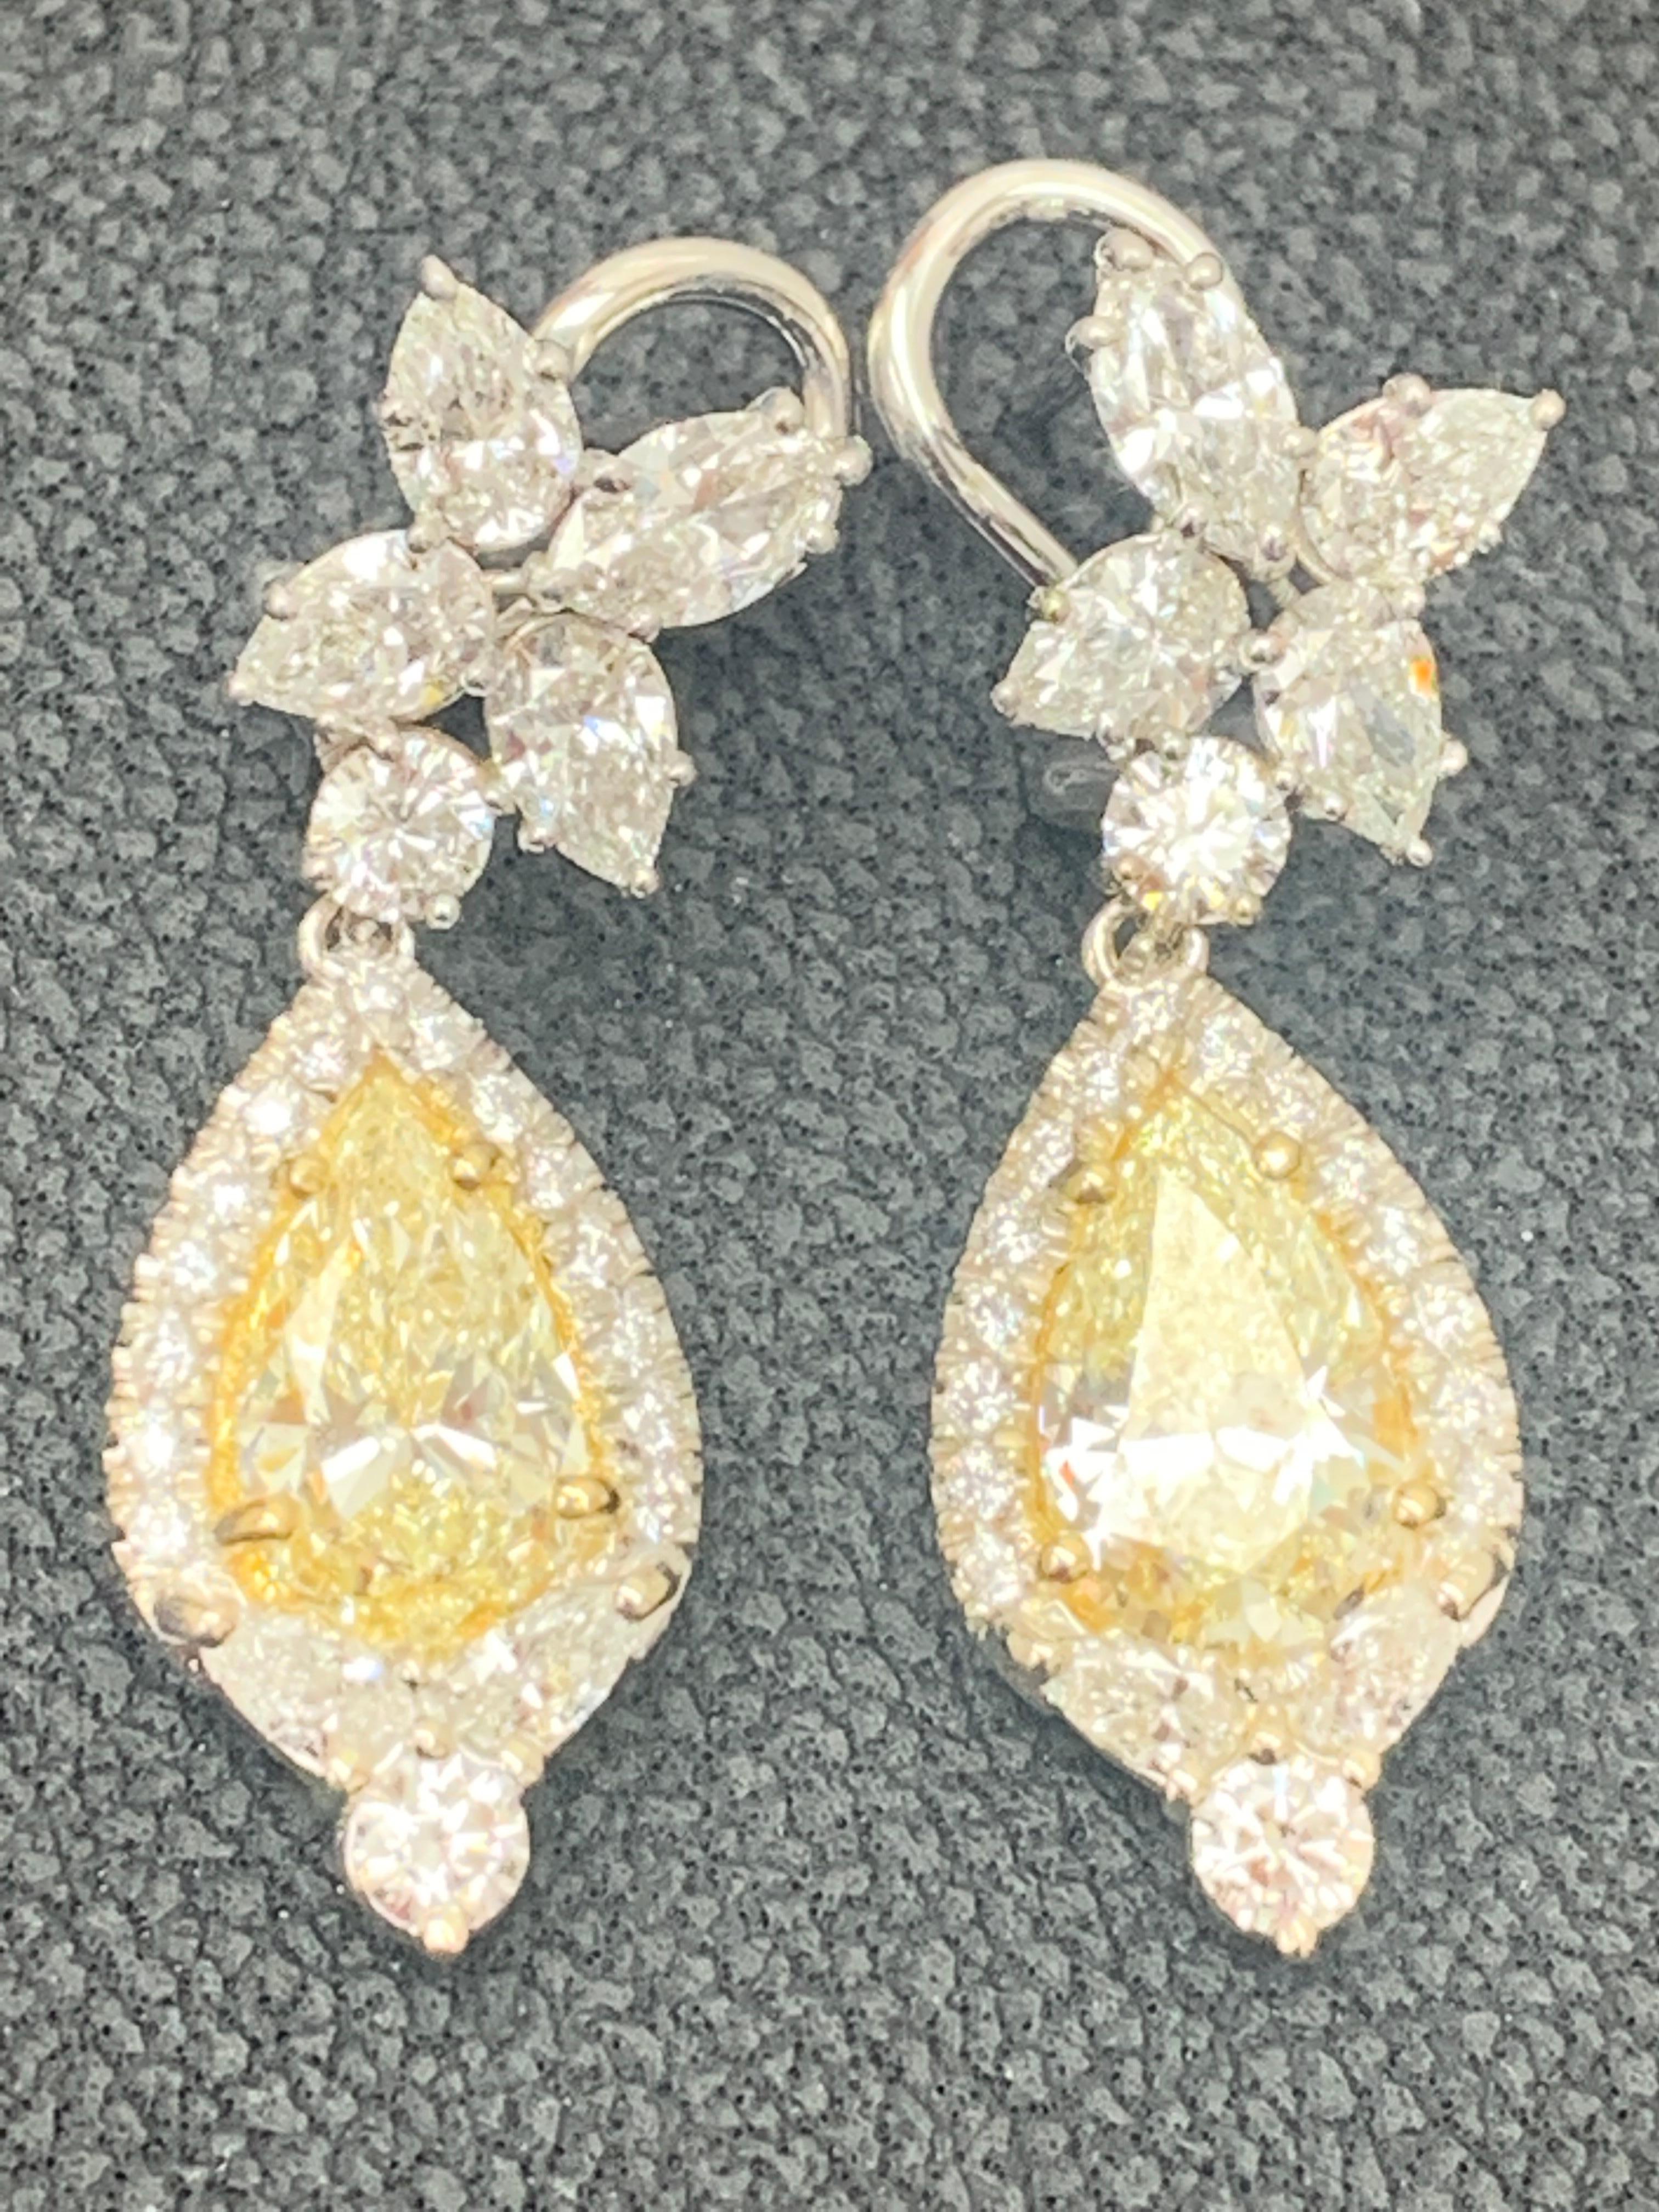 Pear Cut CERTIFIED 2.89 Carat Fancy Yellow Diamond Drop Earrings in 18K White Gold For Sale